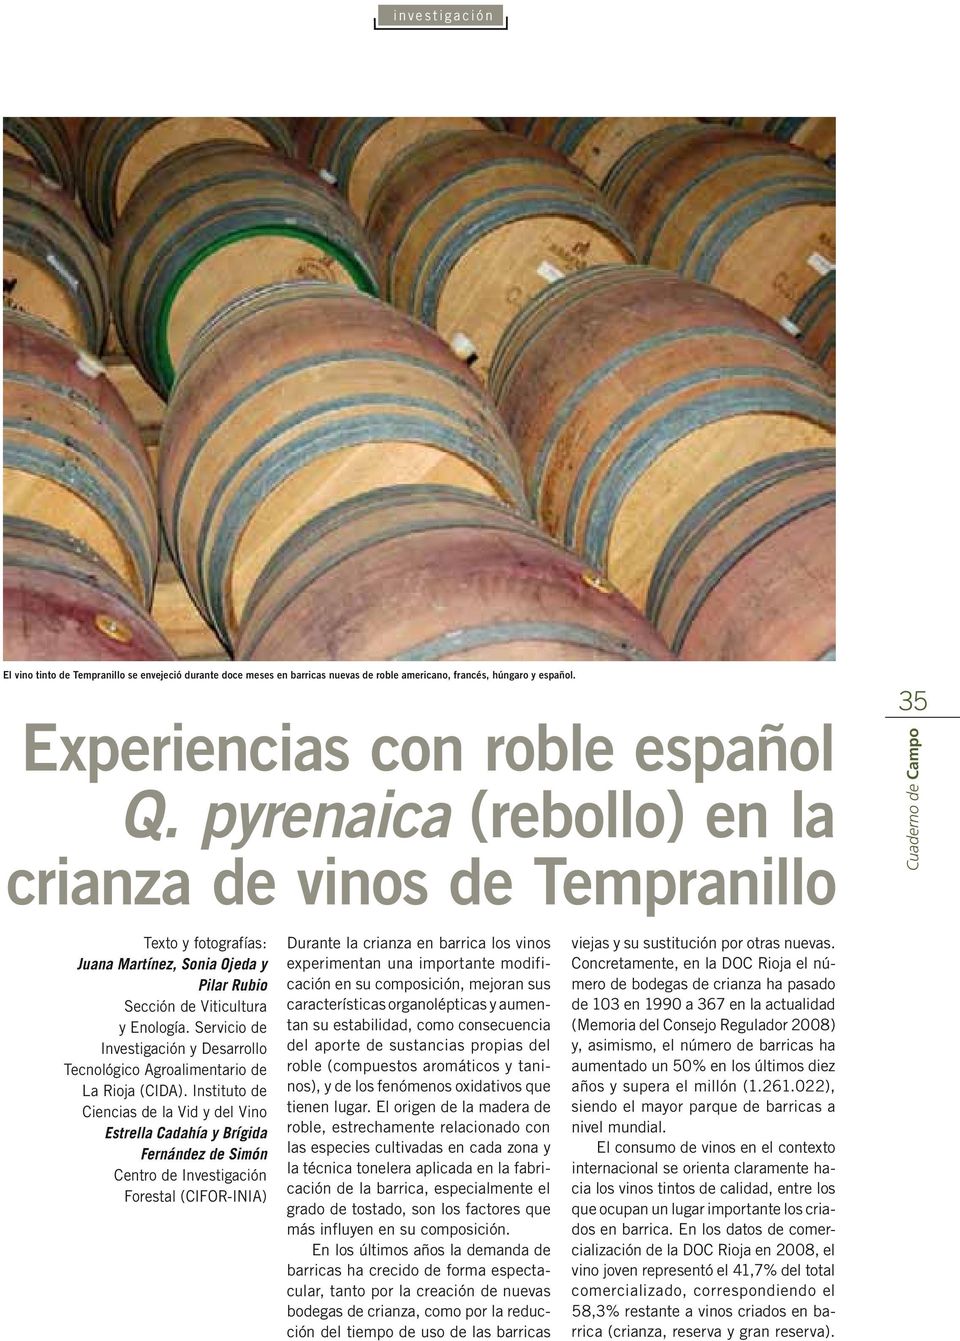 Servicio de Investigación y Desarrollo Tecnológico Agroalimentario de La Rioja (CIDA).